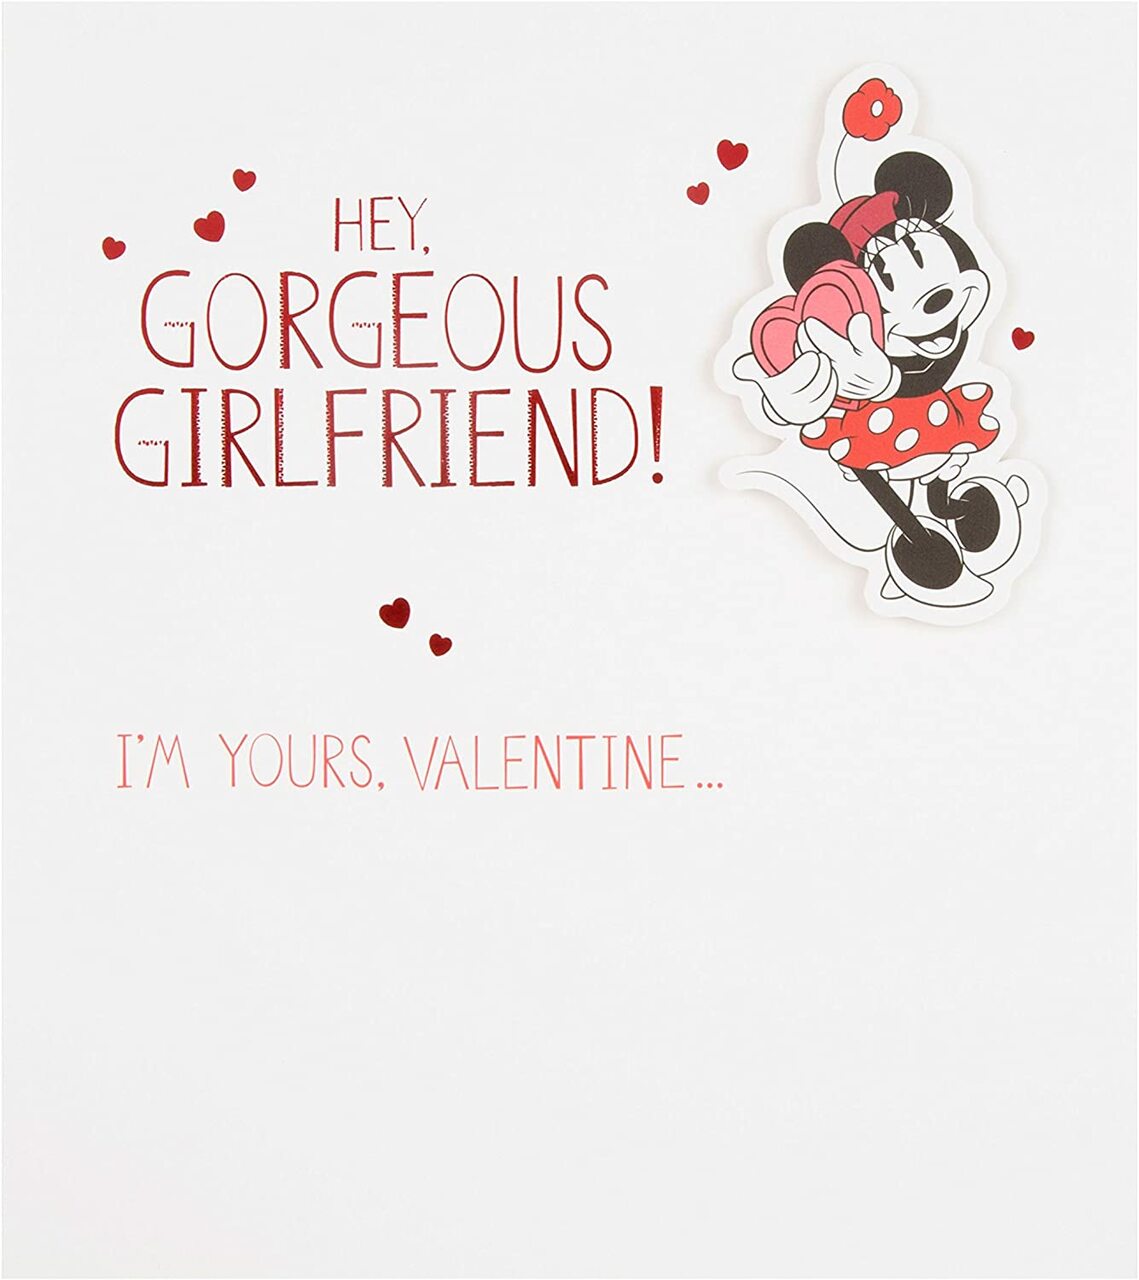 Valentine Card - Hey Gorgeous Girlfriend